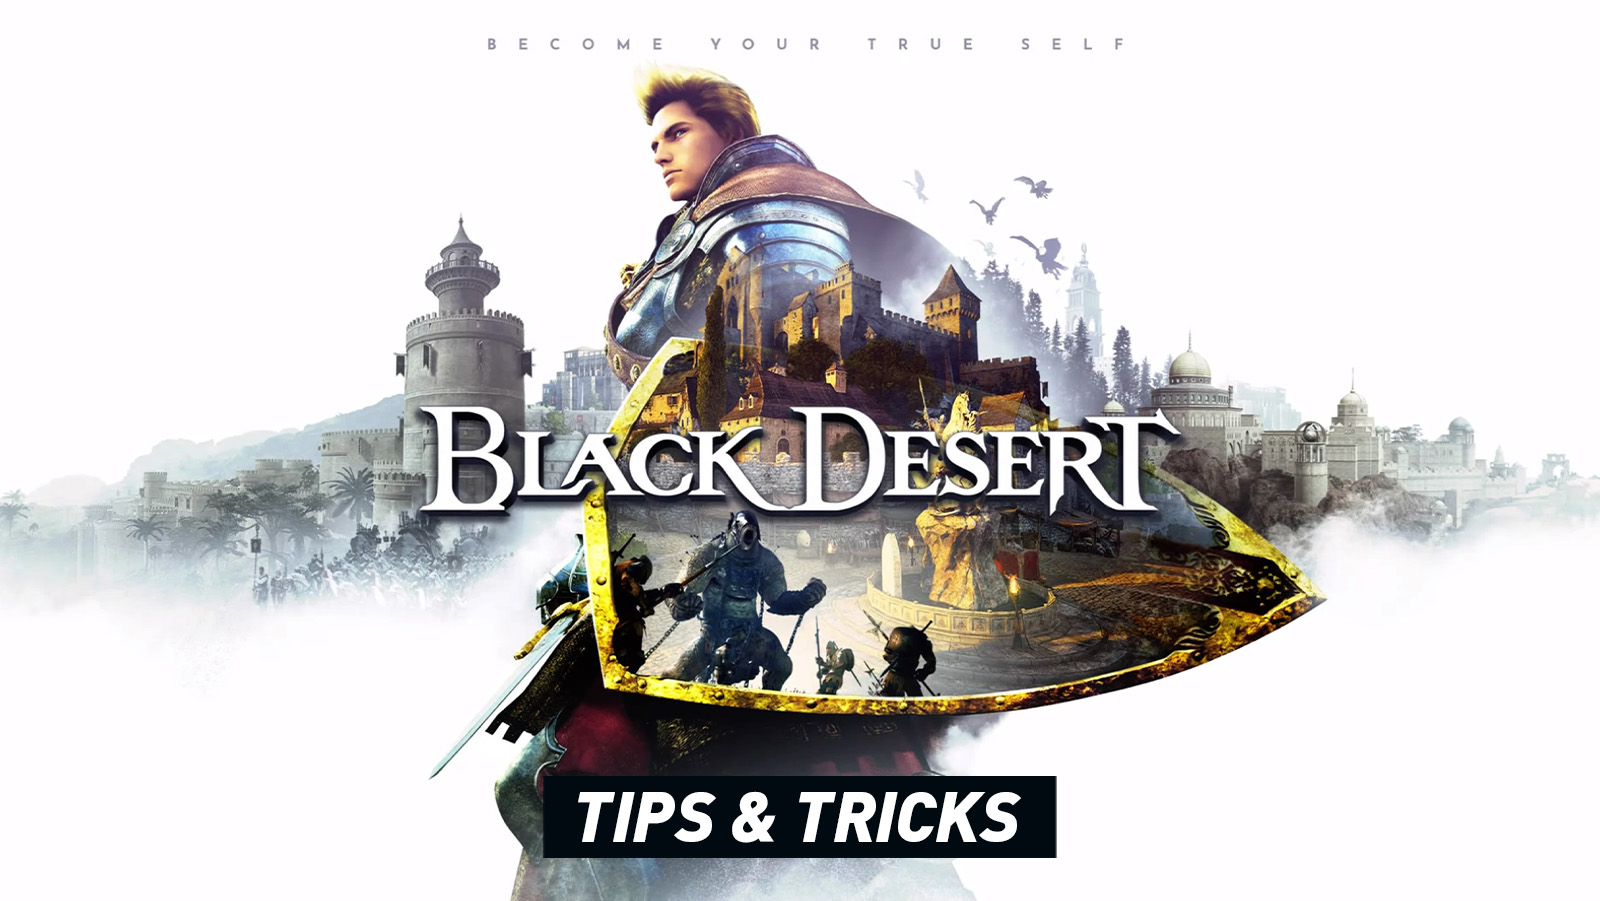 Black Desert – Tips